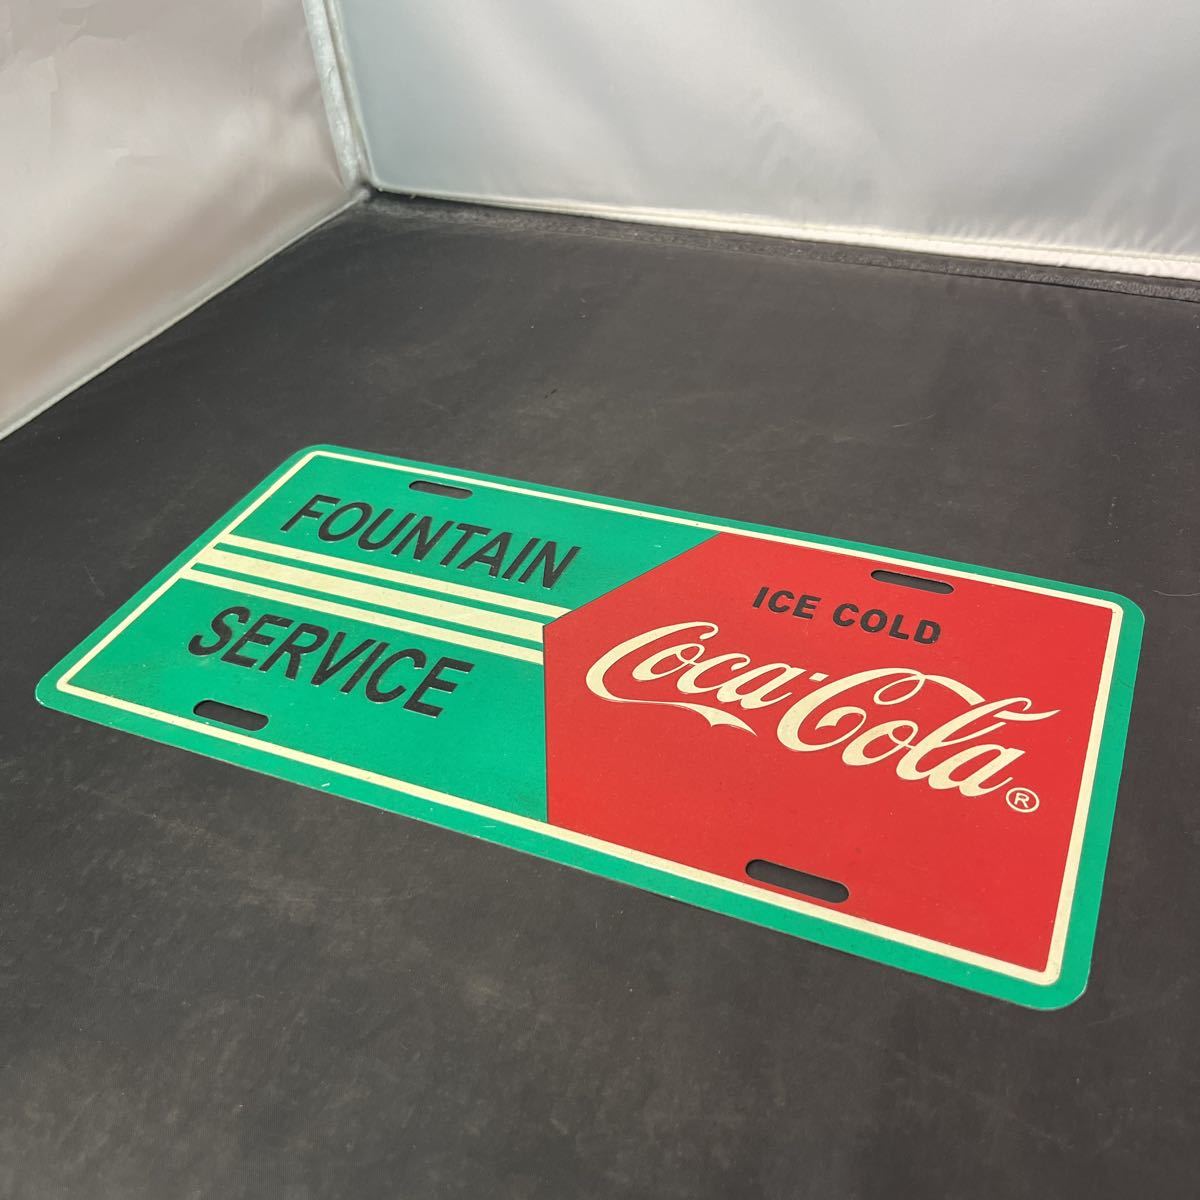  Coca Cola Coca * Cola Coca-Cola номерная табличка plate табличка FOUNTAIN service